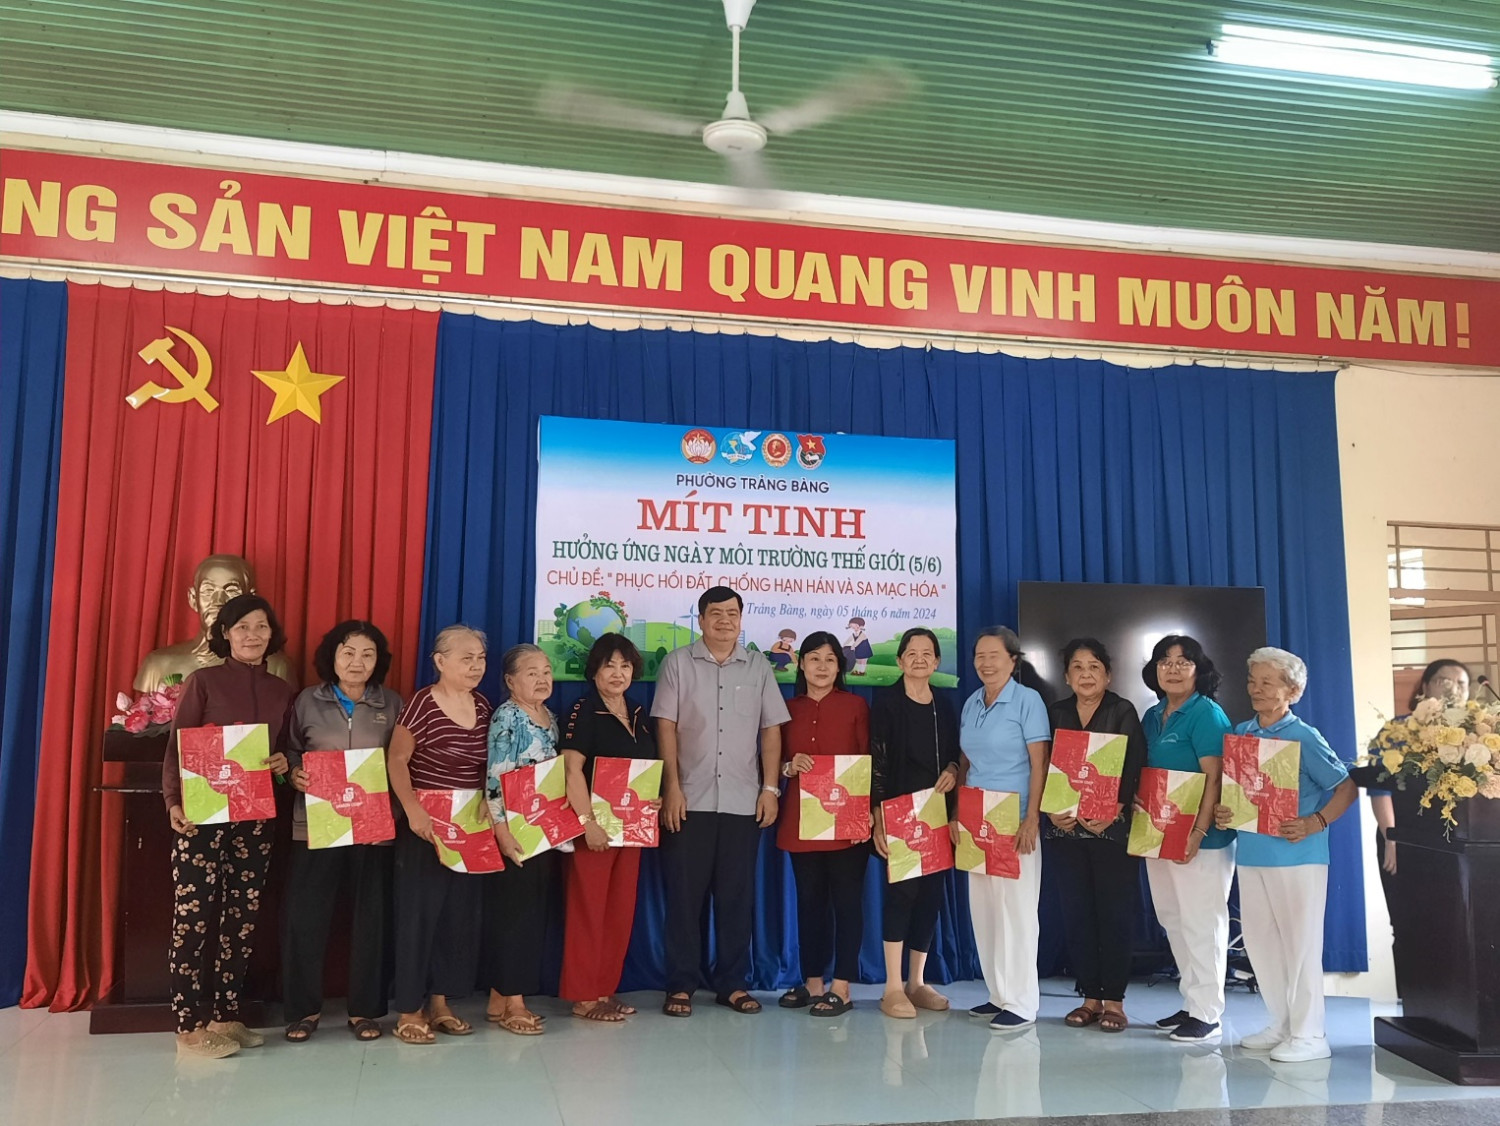 Đồng chí Nguyễn Văn Ngách – Bí thư Đảng ủy phường trao túi thân thiện môi trường đến các hộ gia đình trên địa bàn phường